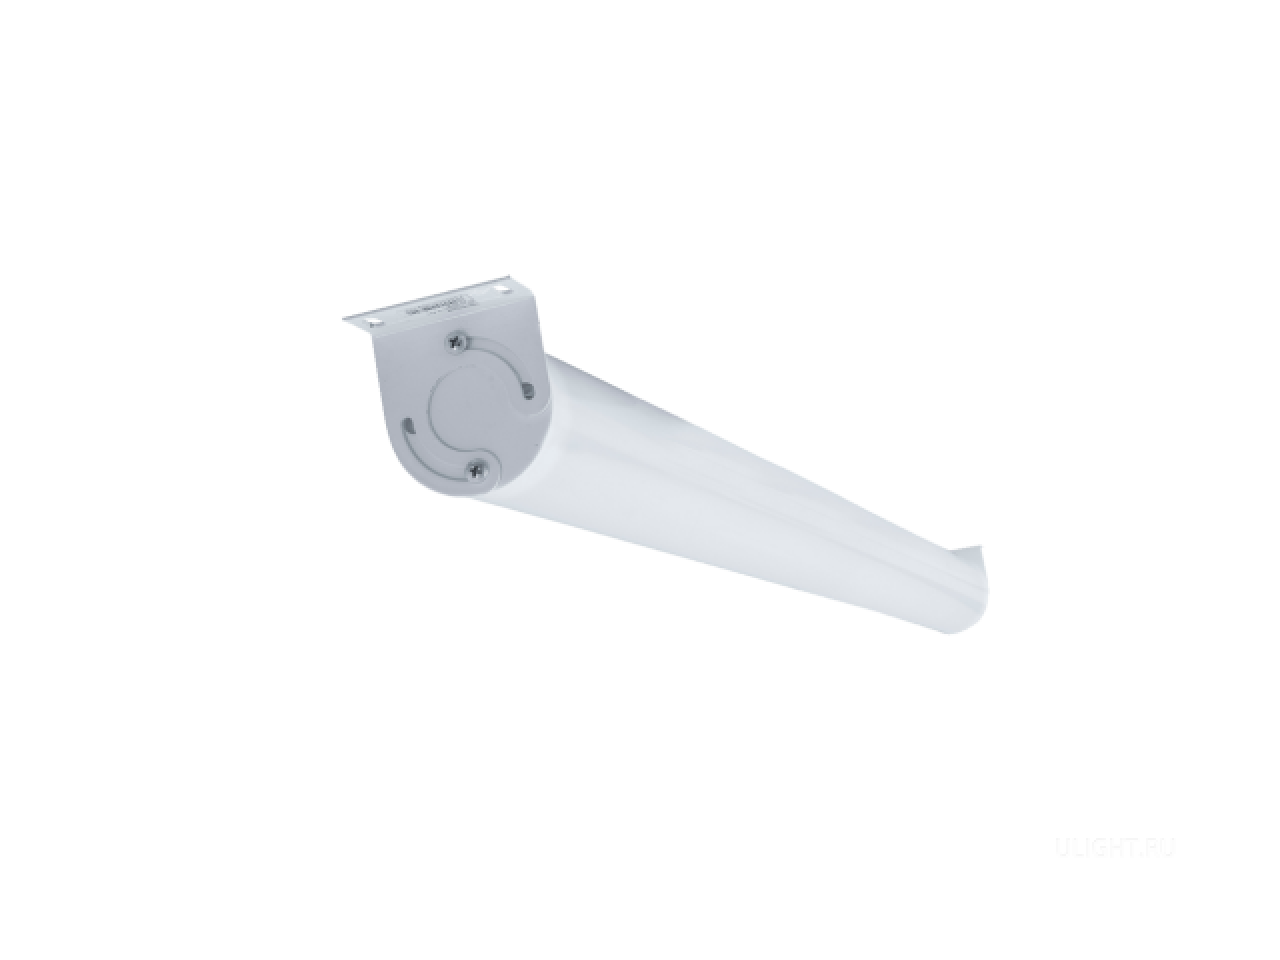 Светильник HOKASU R70 IP применяется для светодиодного энергосберегающего освещения торговых площадей, общественных зданий, промышленных объектов, складов, коридоров, крытых парковок, автомоек, прачечных.
Может устанавливаться как на потолки, так и на вертикальные поверхности.
